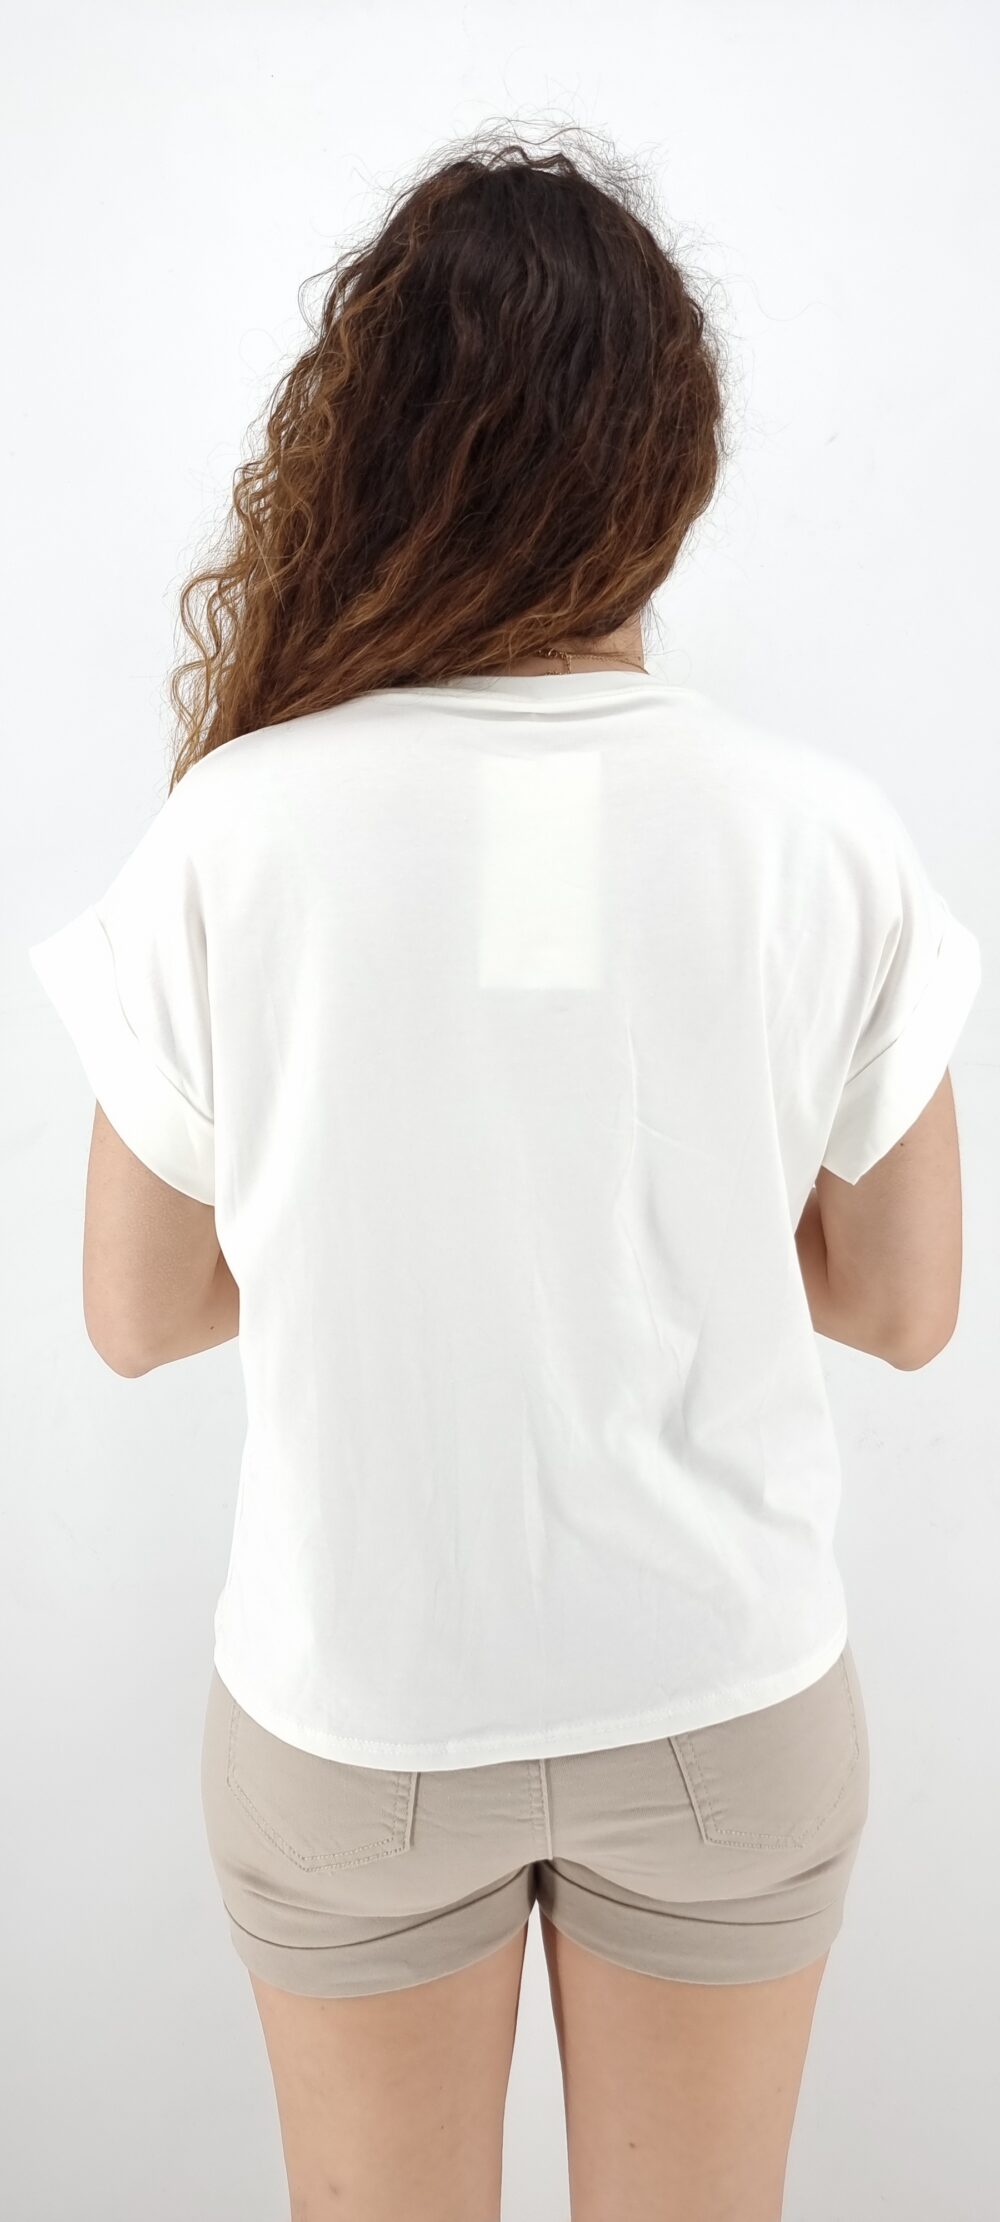 Τ-shirt άσπρο μακό βαμβακερό με μοτίβο χείλια και δάκρυα